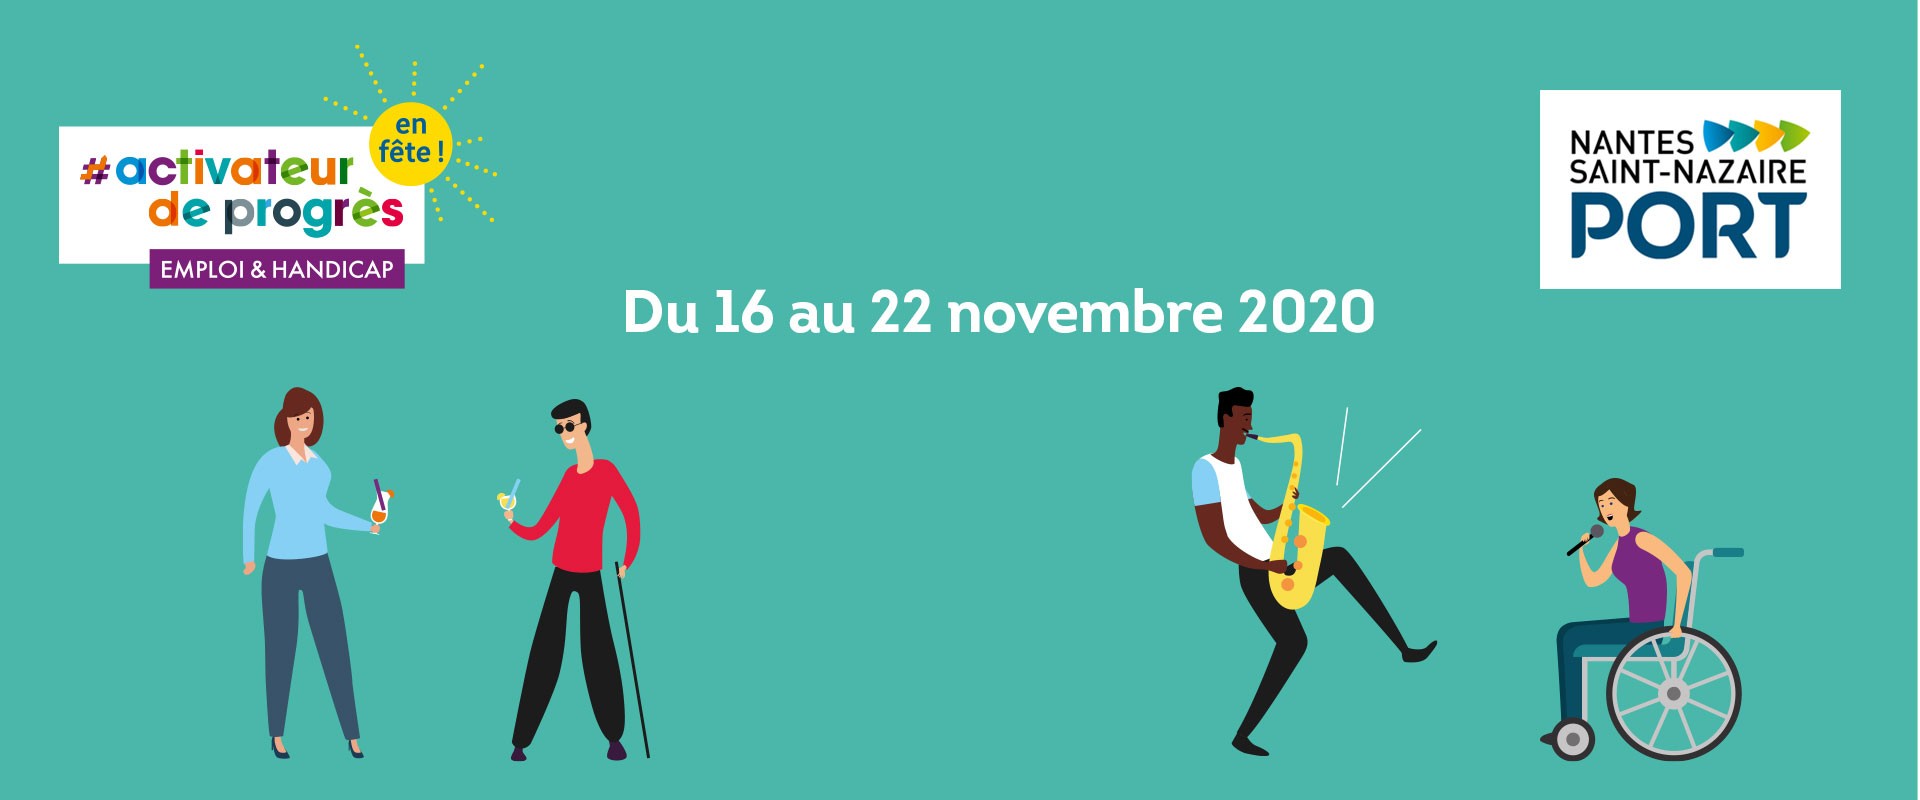 Semaine Européenne pour l'Emploi des Personnes Handicapées 2020 - Nantes Saint-Nazaire Port se mobilise